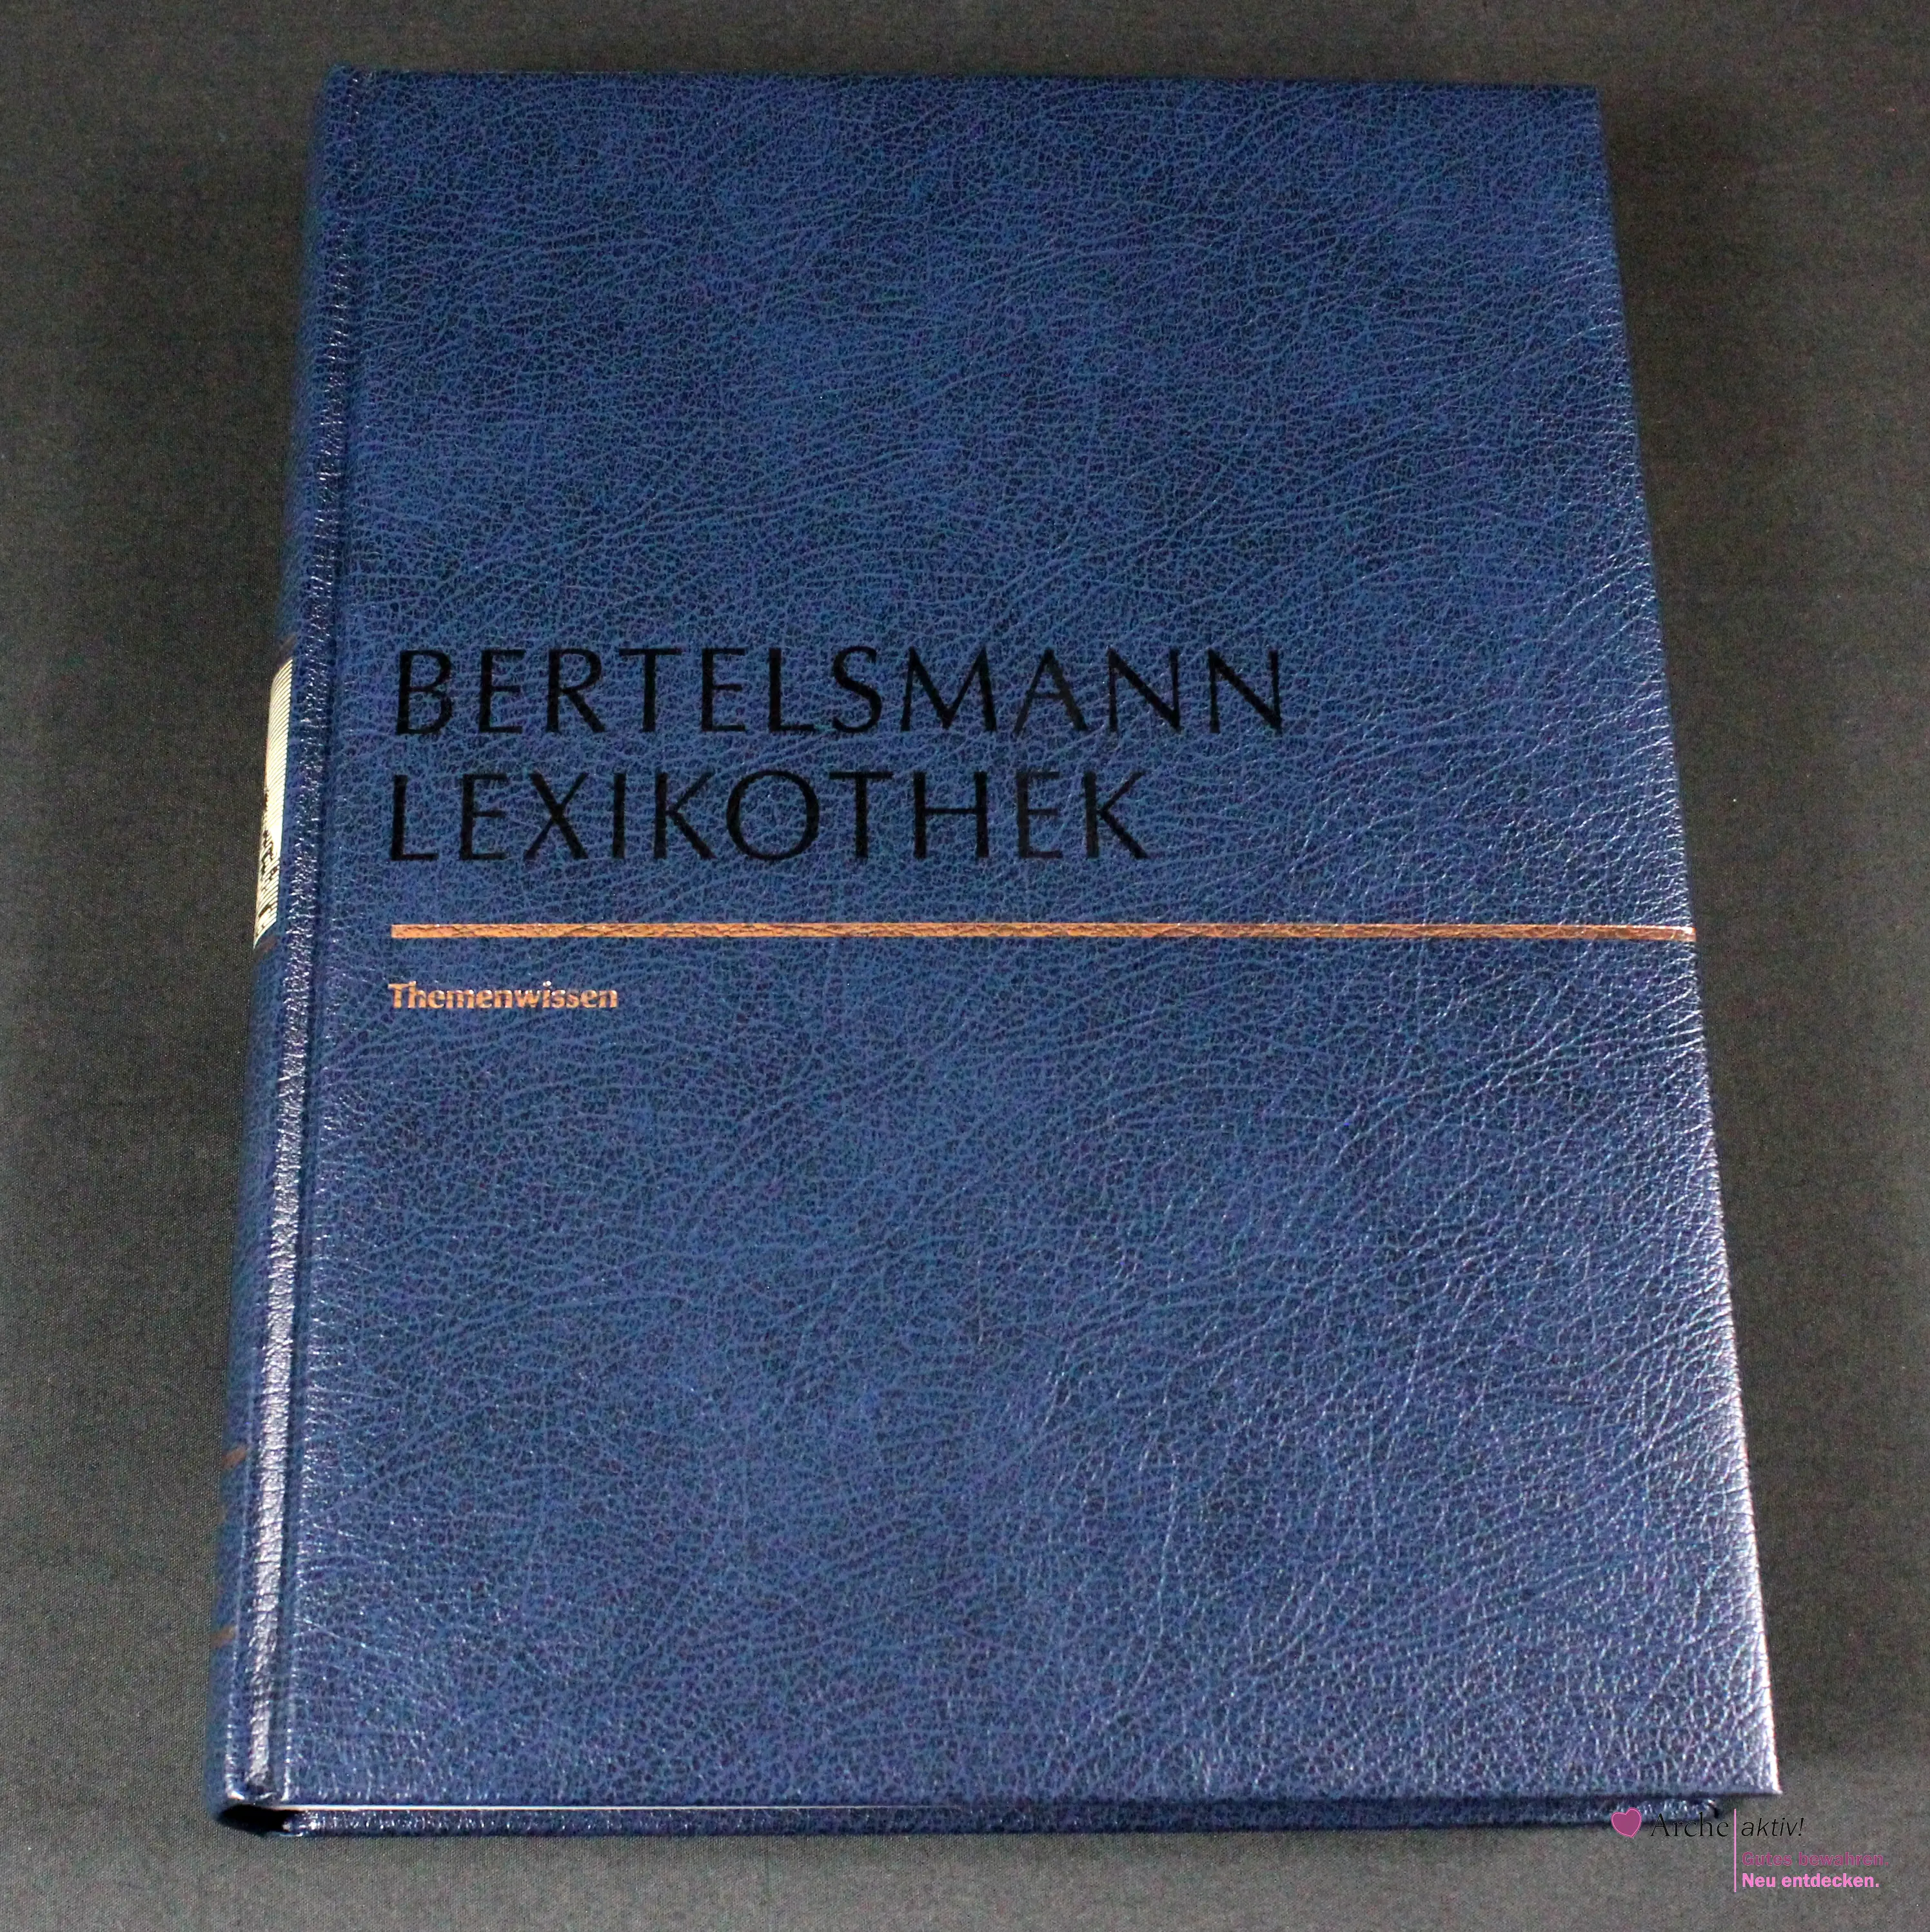 Bertelsmann Lexikothek - Themenwissen - Panorama Kunst und Kultur, gebraucht